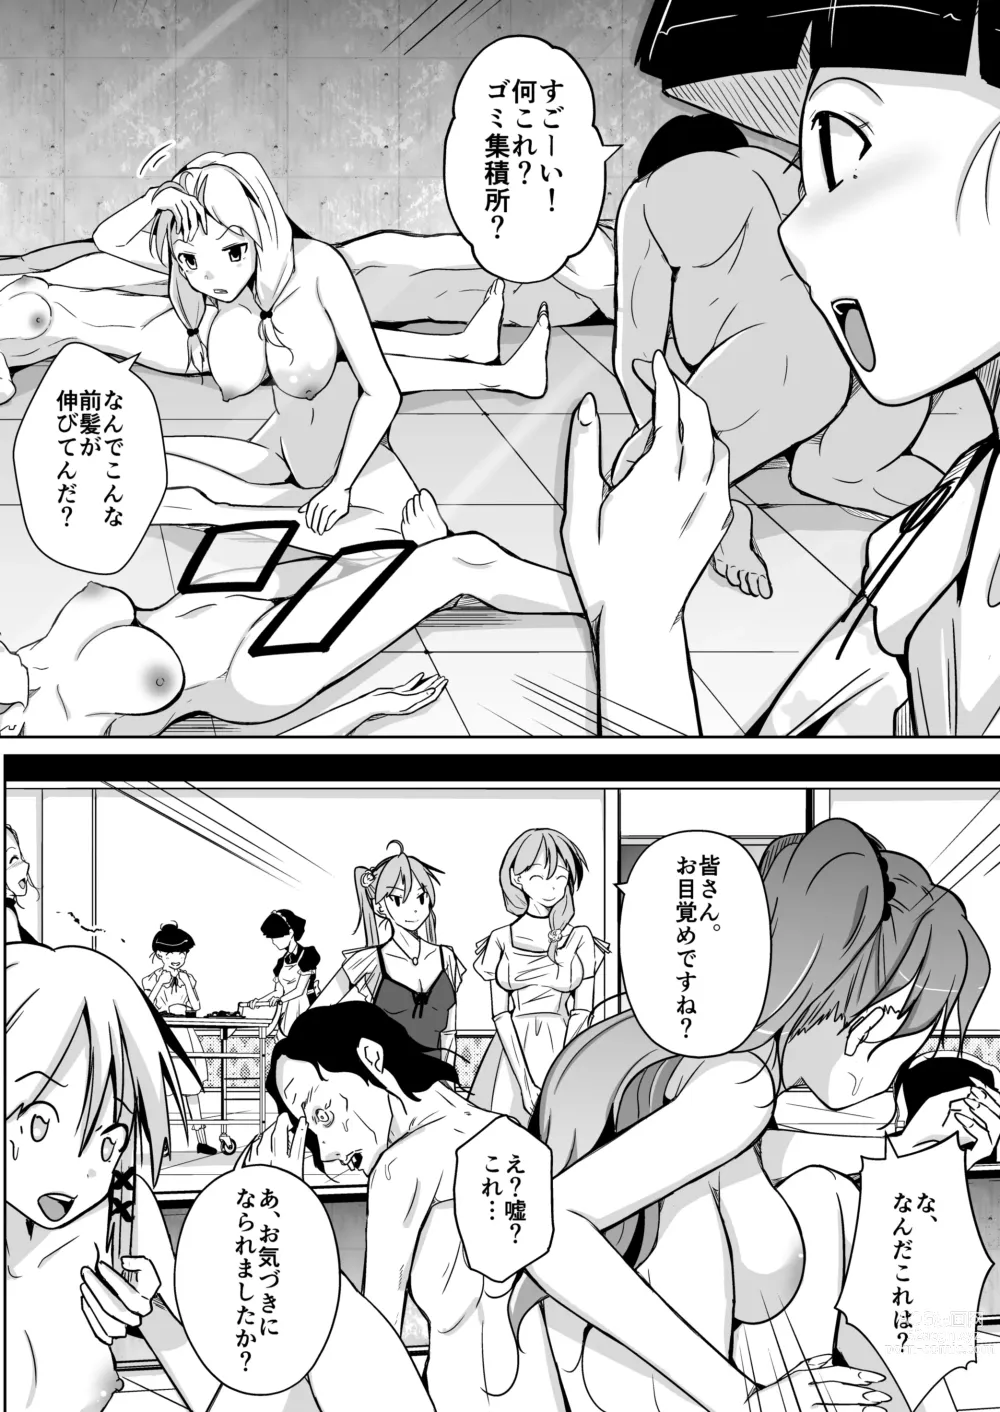 Page 6 of doujinshi BODY SWAP SHOW!